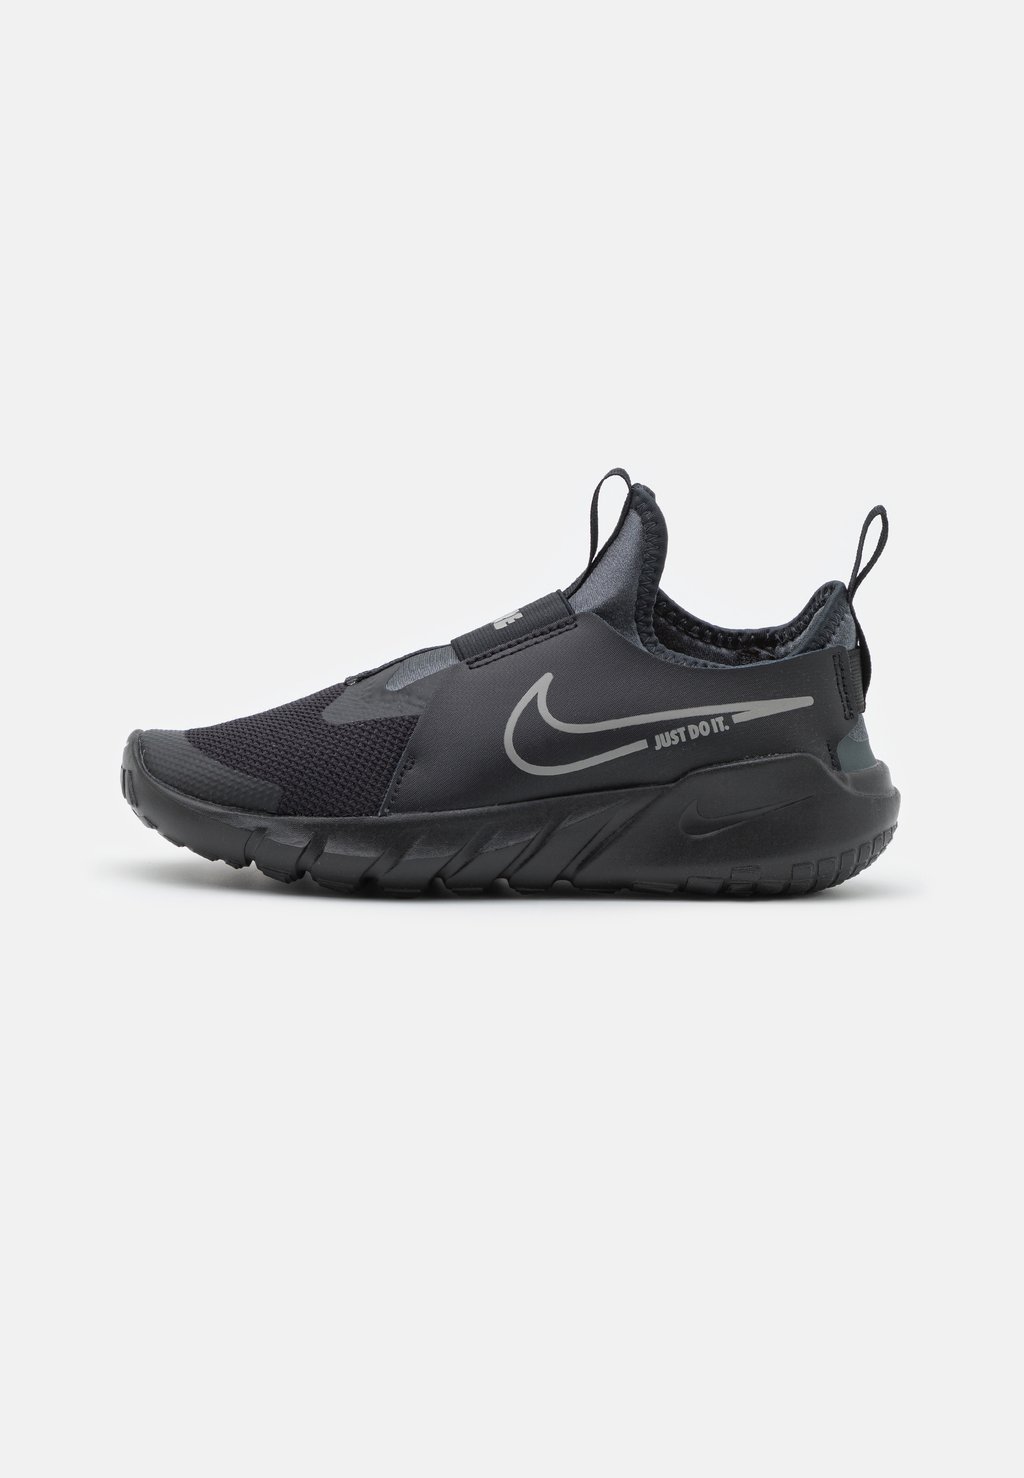 Нейтральные кроссовки Flex Runner 2 Unisex Nike, цвет black/flat pewter/anthracite/photo blue t6931 photo black 350 мл c13t693100